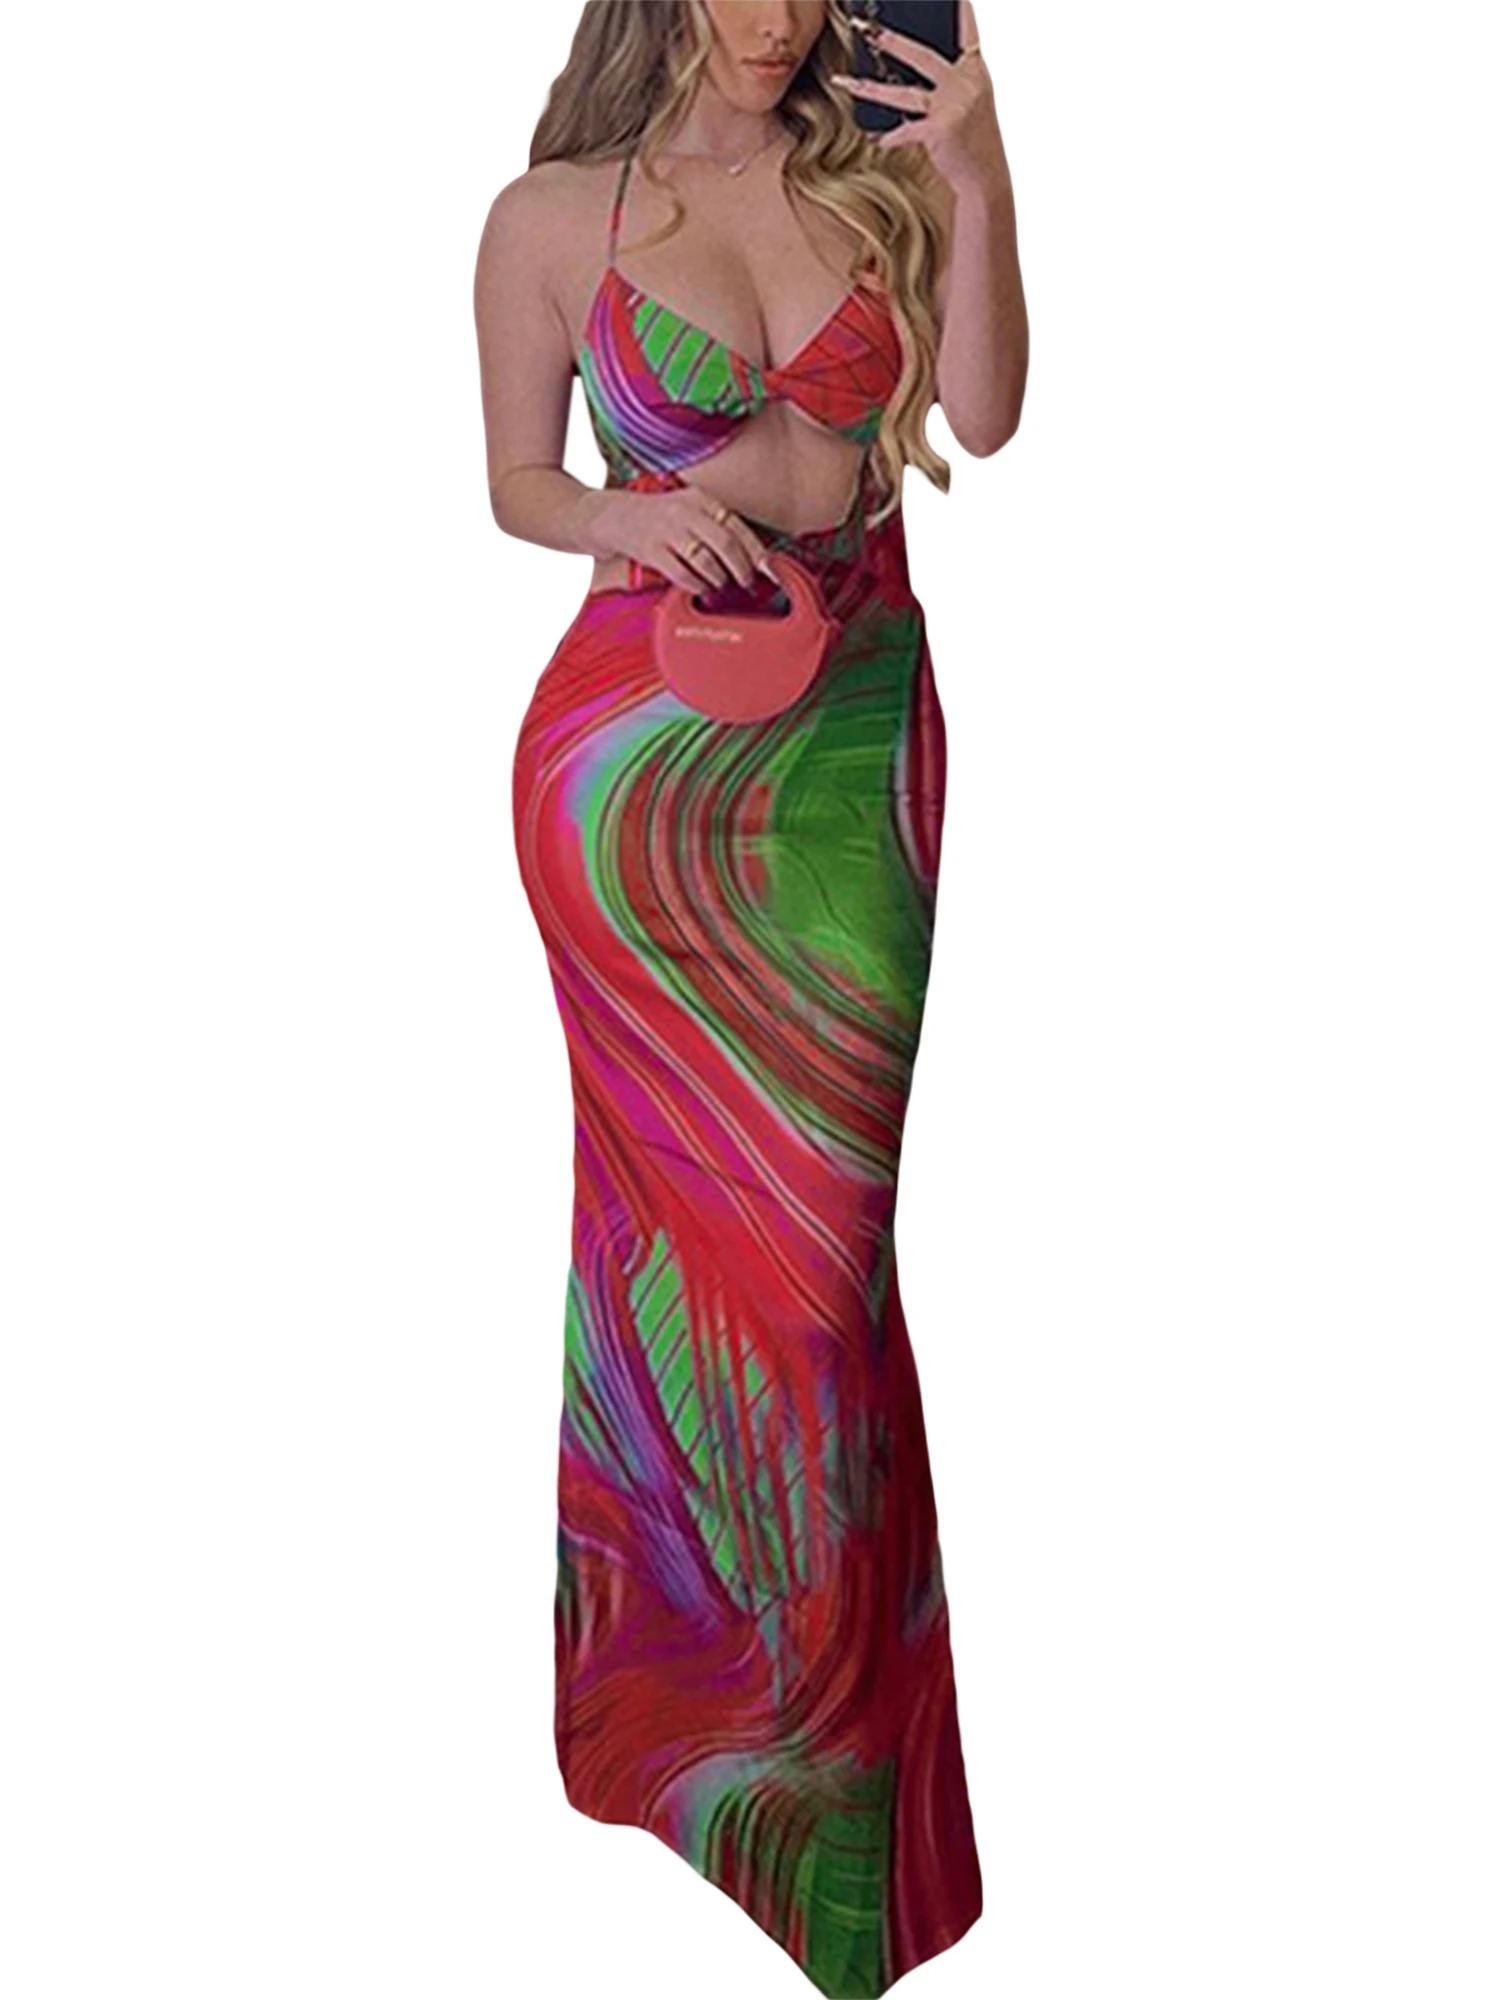 

TNGXXWL женское длинное платье с крученым узлом, вырез, V-образный вырез, цветочный принт, платье с открытой спиной, летнее свободное Цветочное платье, женская пляжная одежда (желтая